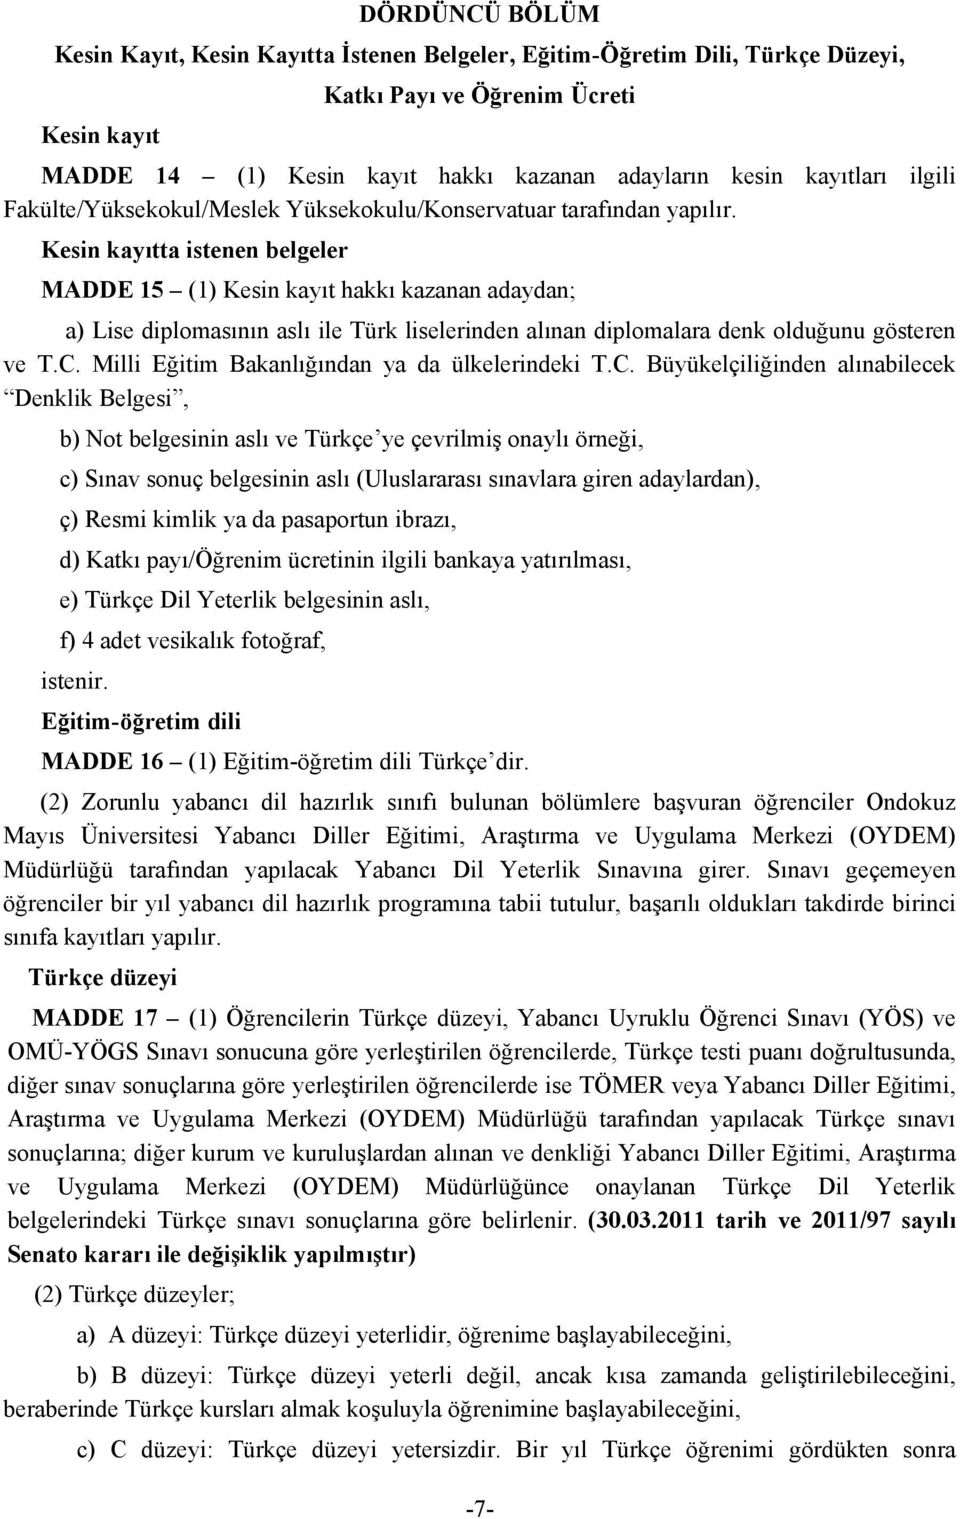 Kesin kayıtta istenen belgeler MADDE 15 (1) Kesin kayıt hakkı kazanan adaydan; a) Lise diplomasının aslı ile Türk liselerinden alınan diplomalara denk olduğunu gösteren ve T.C.